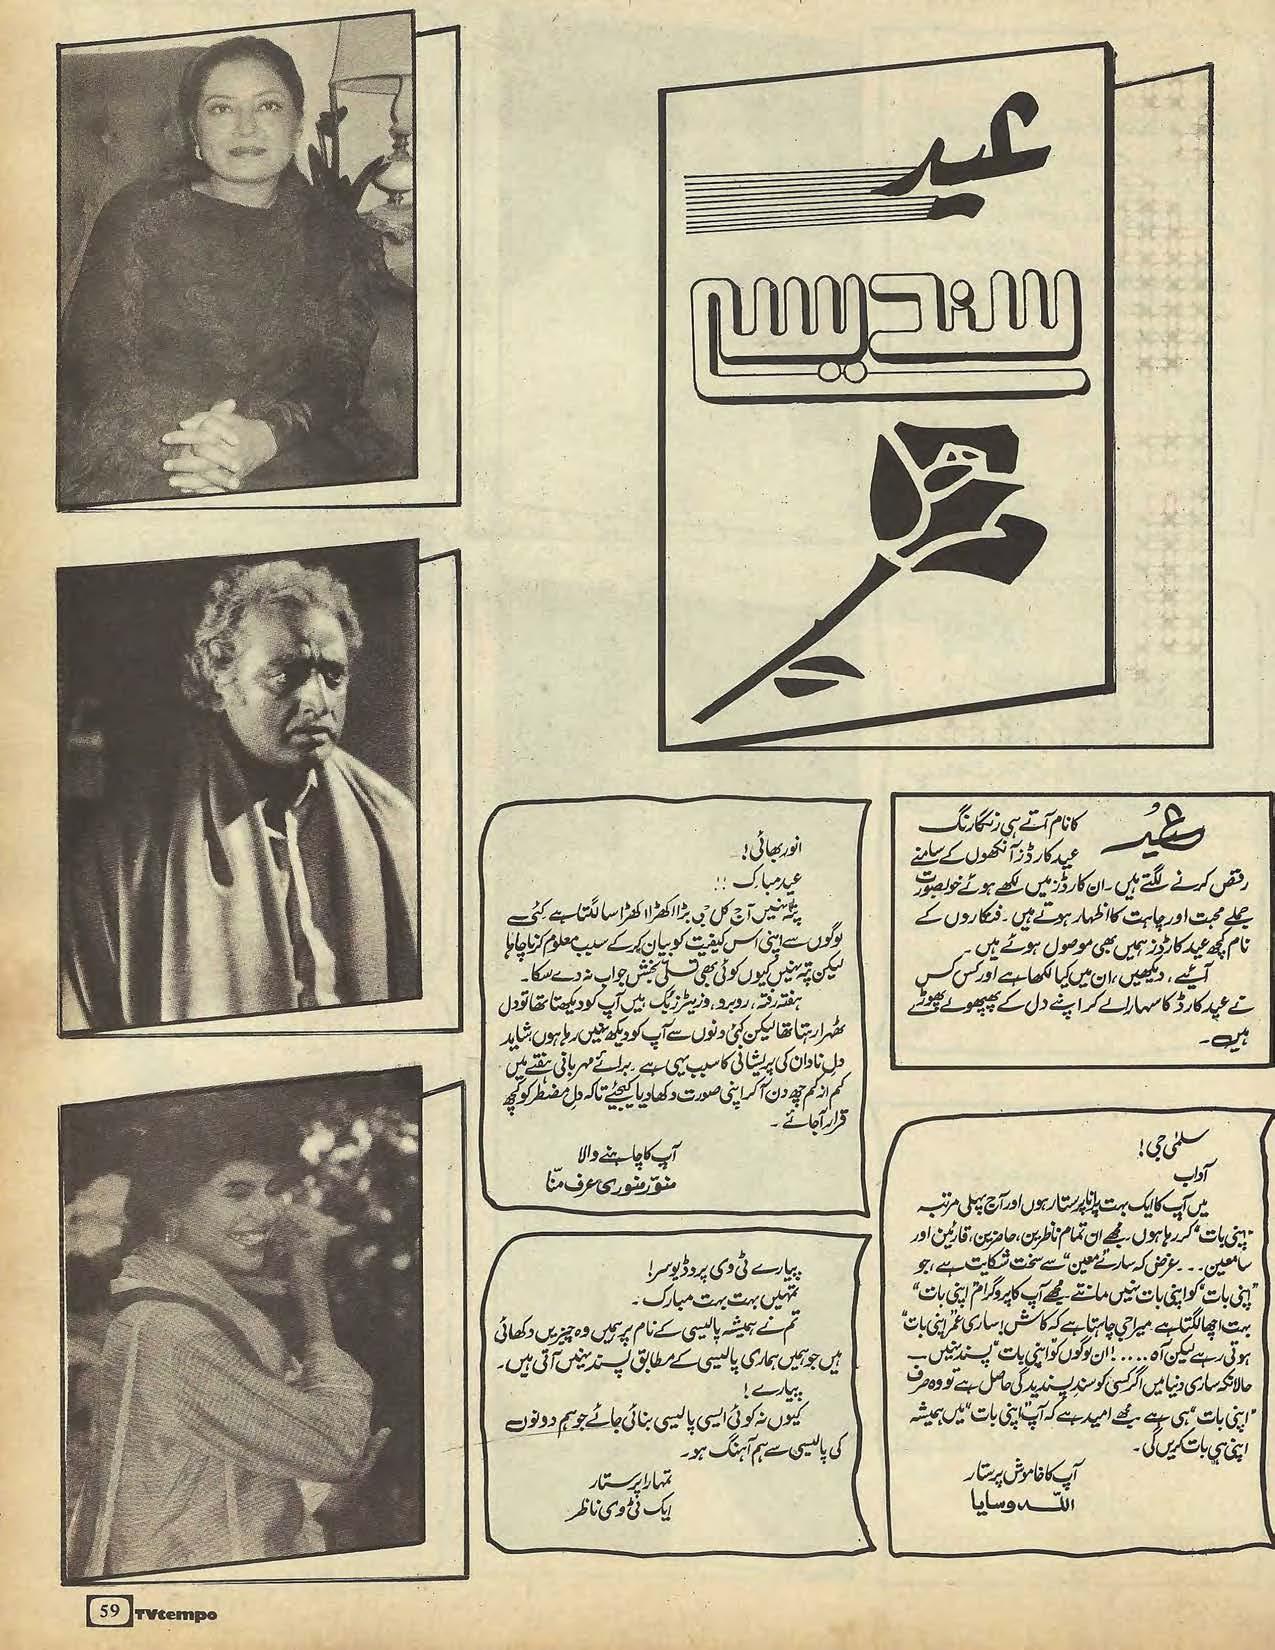 TV Tempo International (May, 1988) - KHAJISTAN™